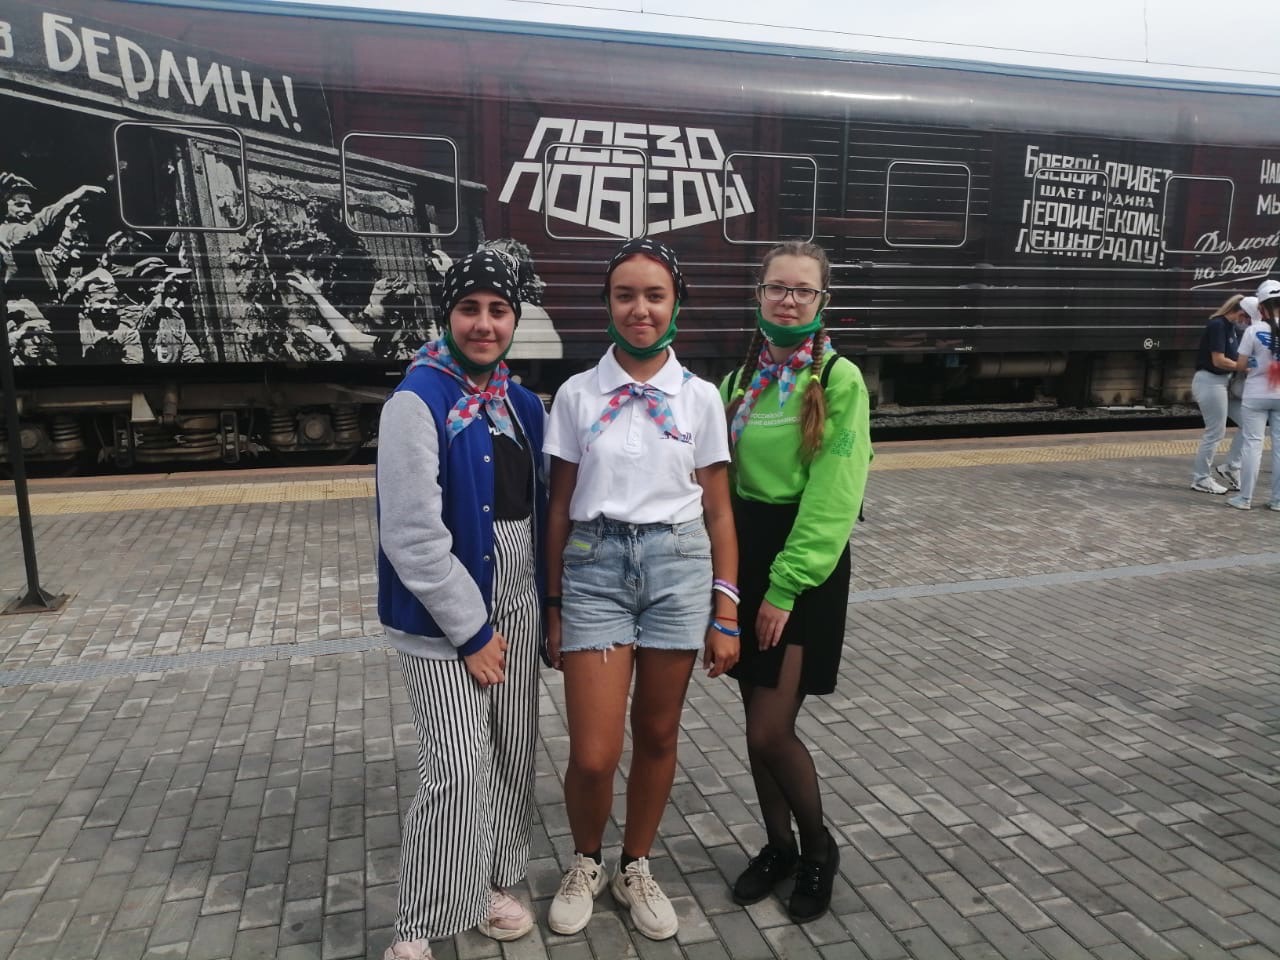 Активистам #РДШ96 и их родителям посчастливилось ПЕРВЫМИ посетить экскурсию с аудио-гидом по Поезду Победы.